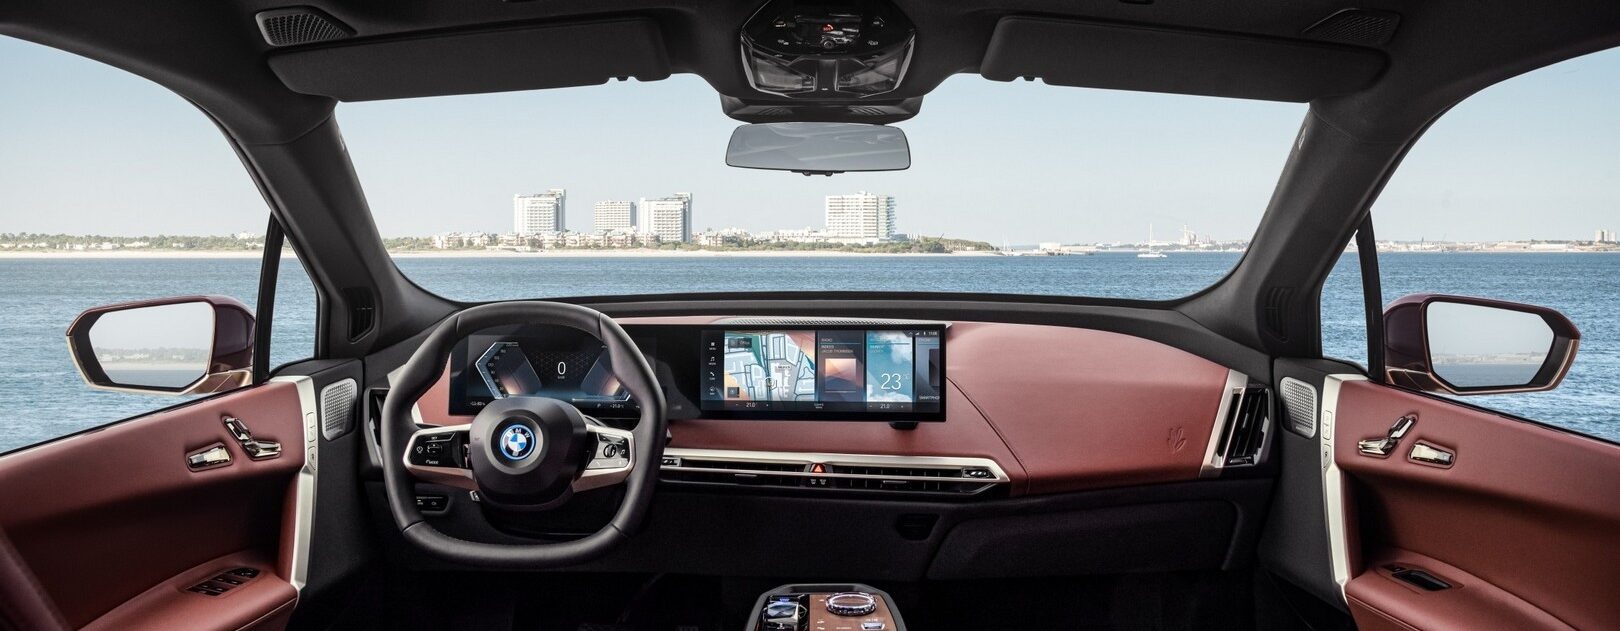 BMW отзывает iX из-за непреднамеренной активации круиз-контроля